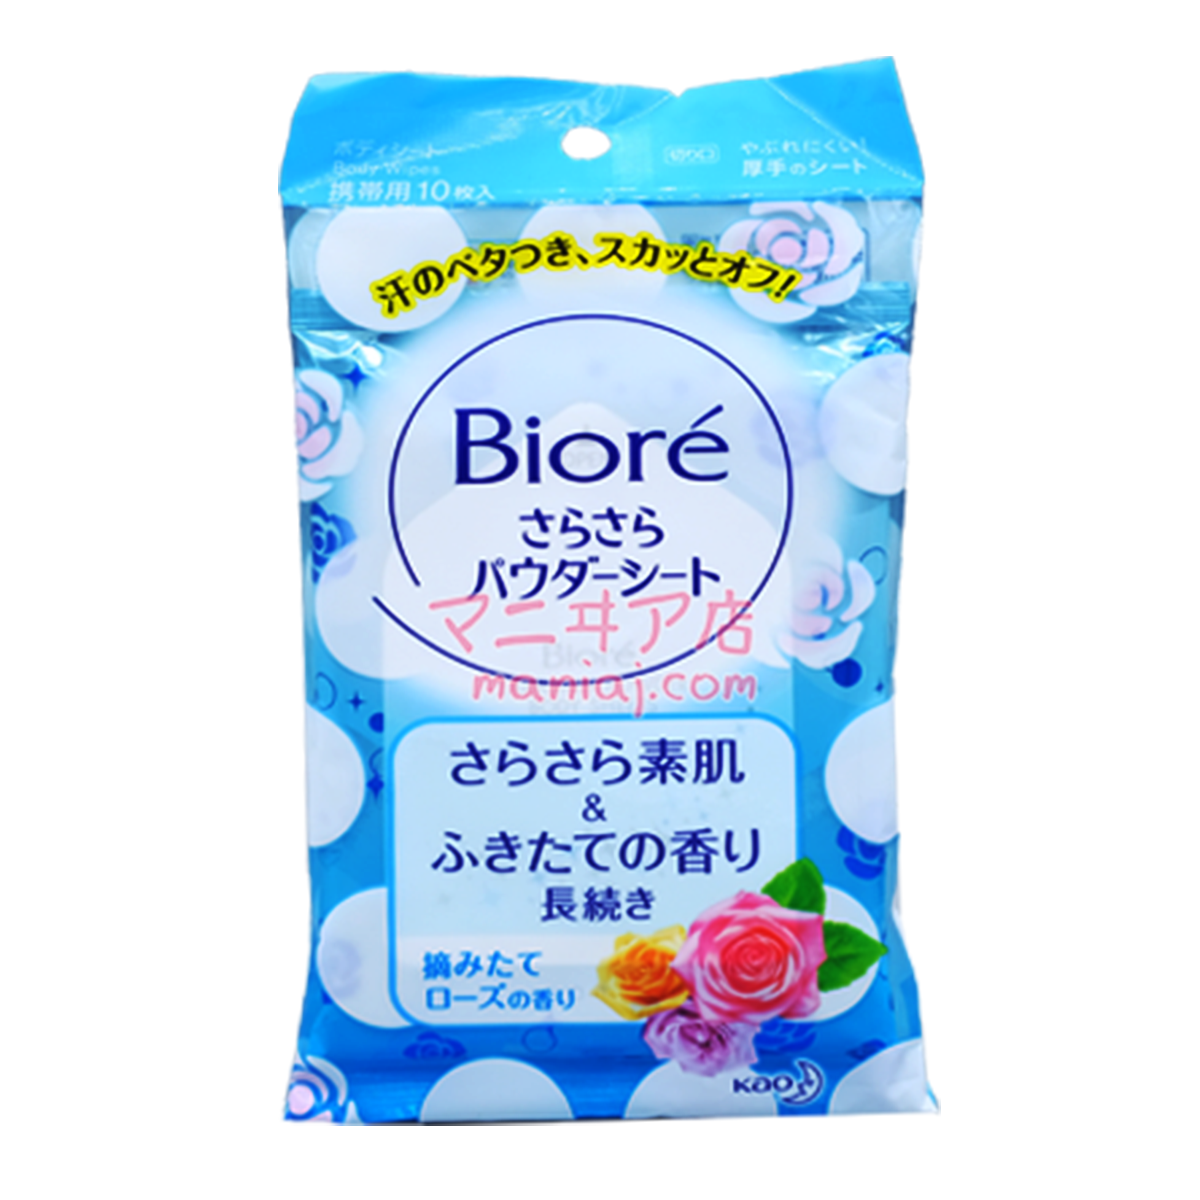 Biore Body Powder Wet Wipes - アシスローズ Rose